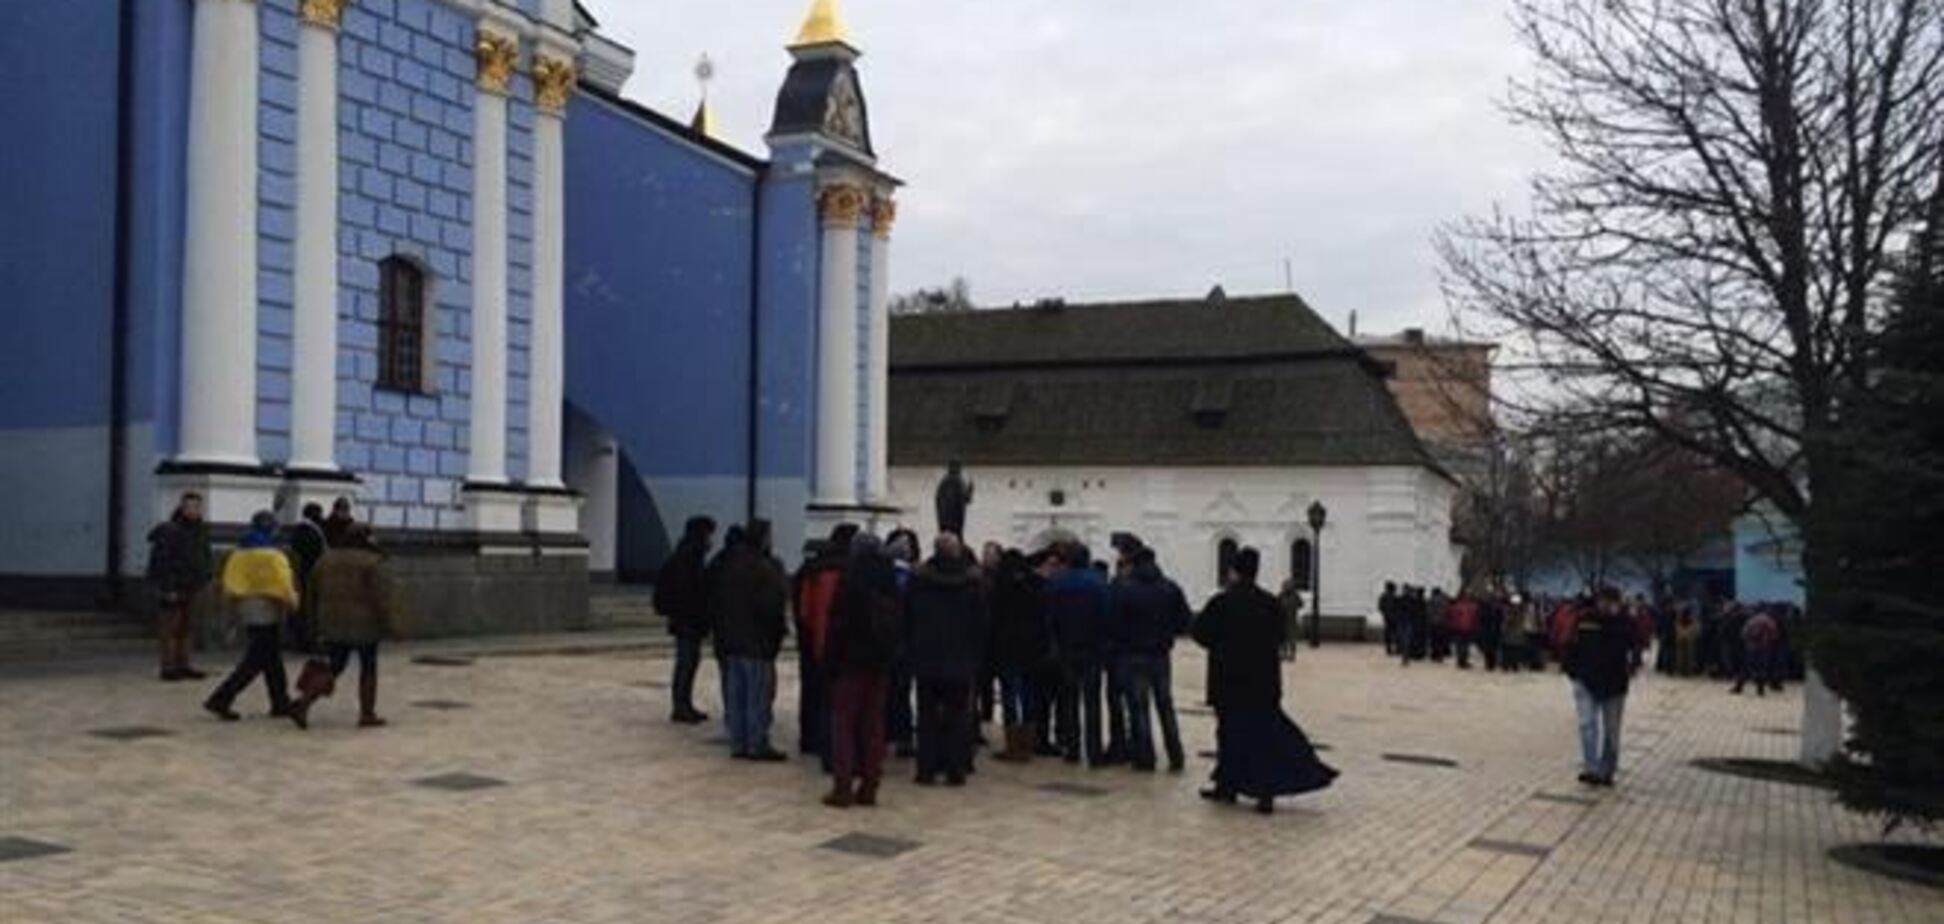 Активісти: ченці погрожують вигнати евромайдановцев з монастиря